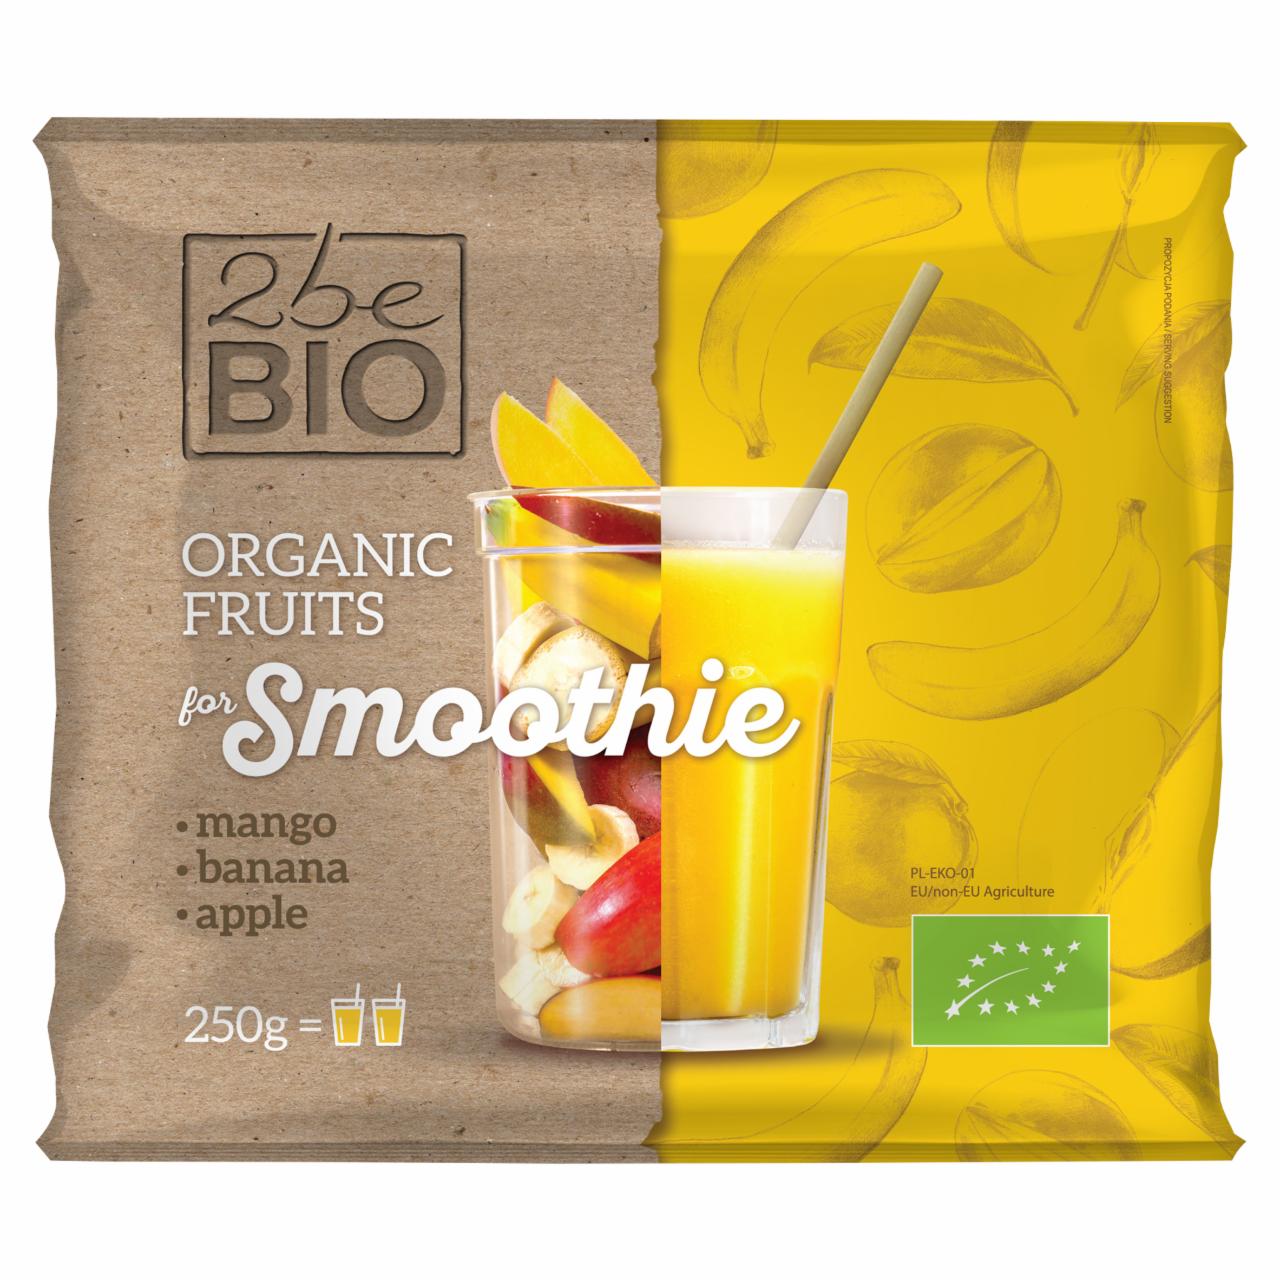 Zdjęcia - 2beBio Ekologiczna mrożona mieszanka owocowa do smoothie 250 g